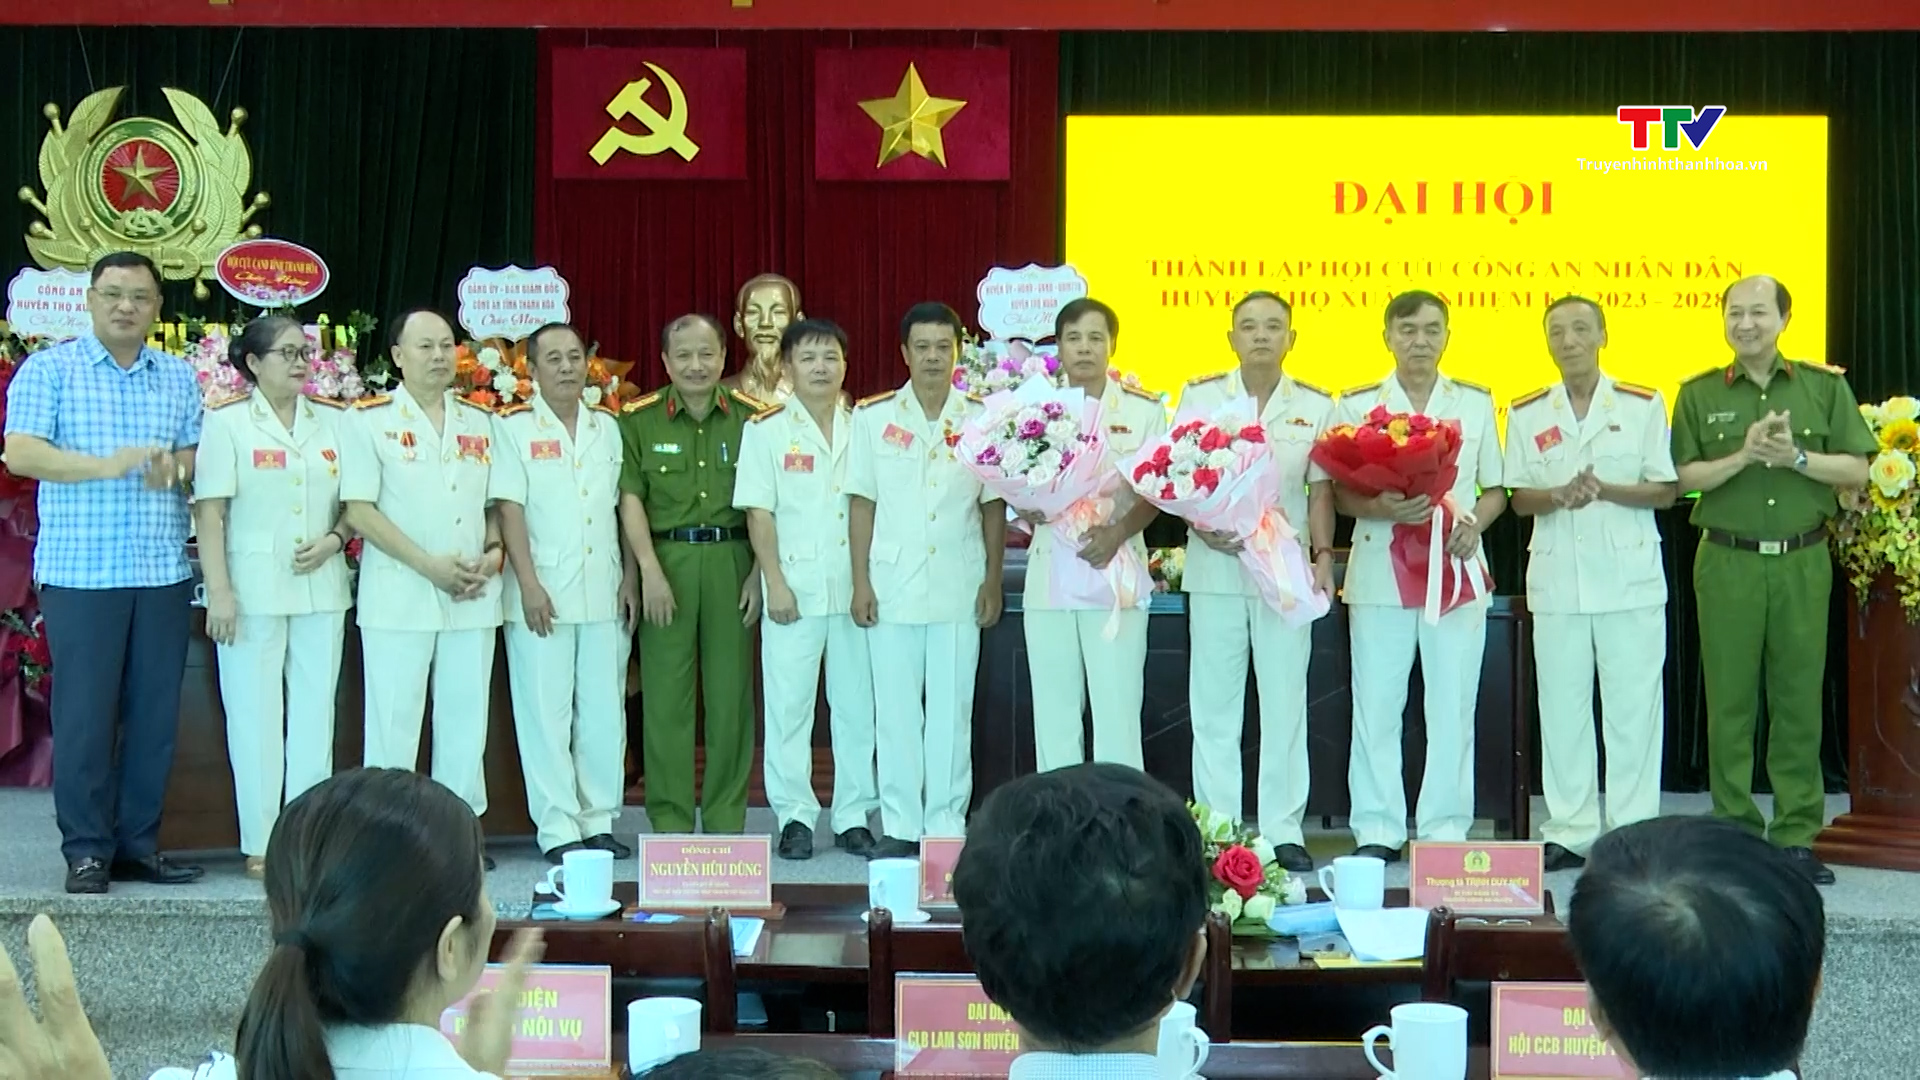 Đại hội thành lập Hội cựu Công an Nhân dân huyện Thọ Xuân, nhiệm kỳ 2023 - 2028- Ảnh 1.